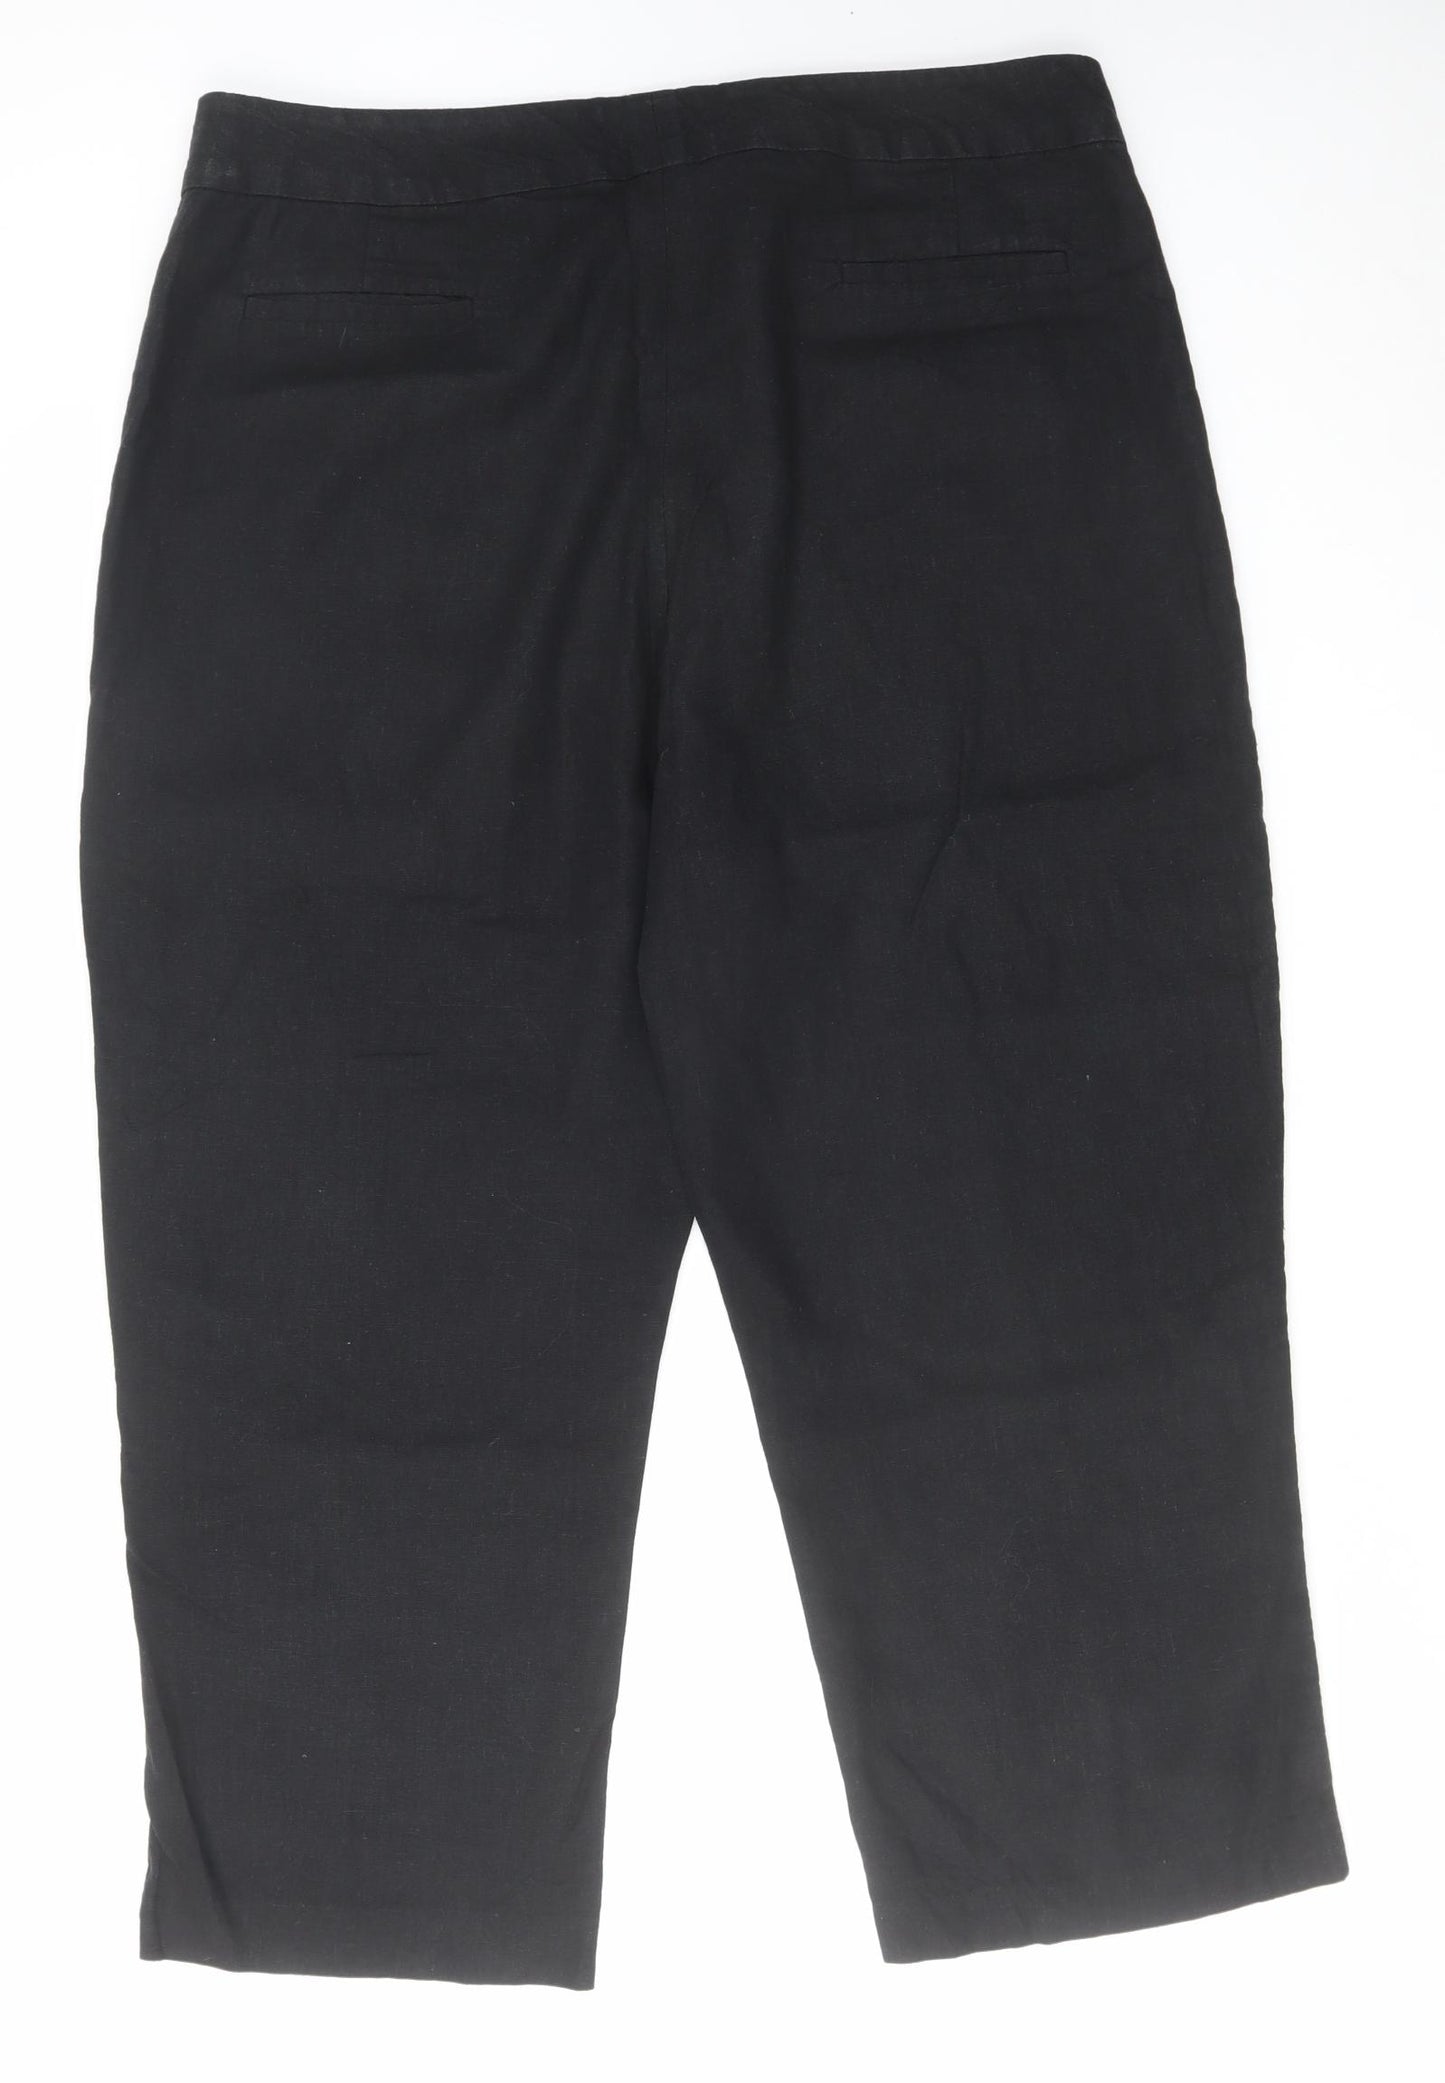 Jennifer & Grace Womens Black Linen Cropped Trousers Size 18 L25 in Regular Hook & Eye